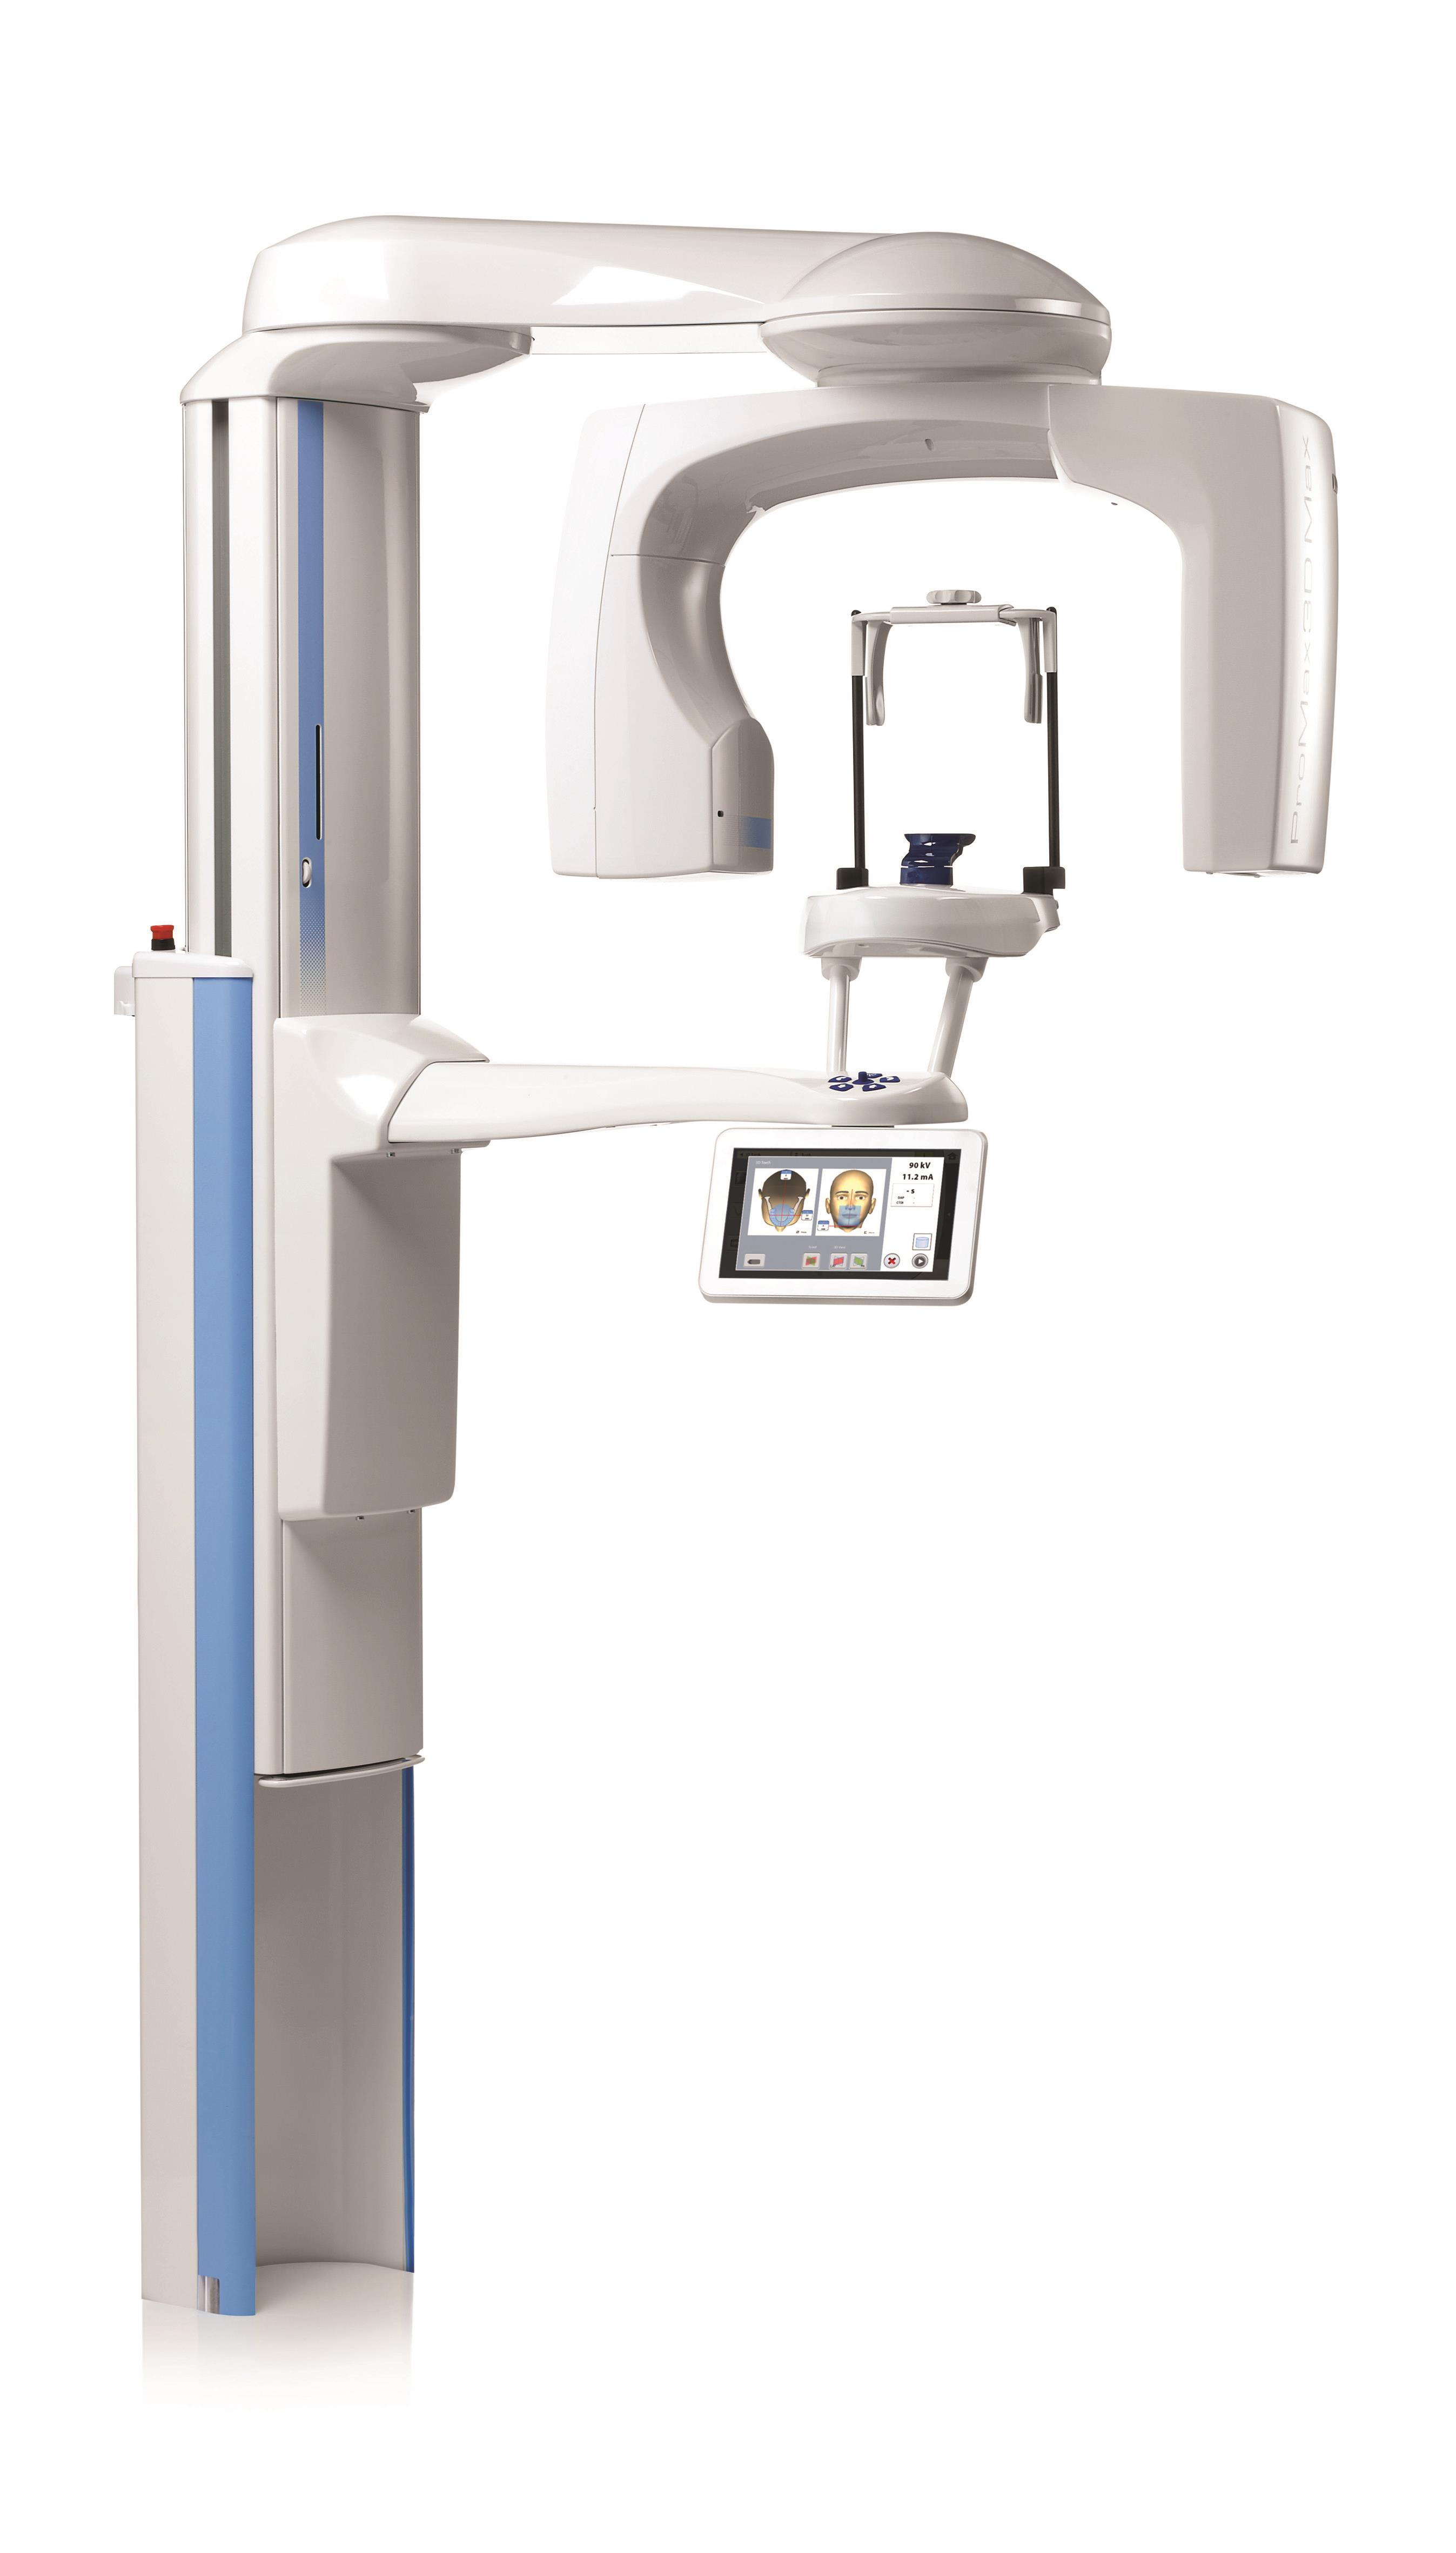 Новые характеристики и усовершенствования рентгеновских аппаратов трёхмерного изображения Planmeca ProMax 3D